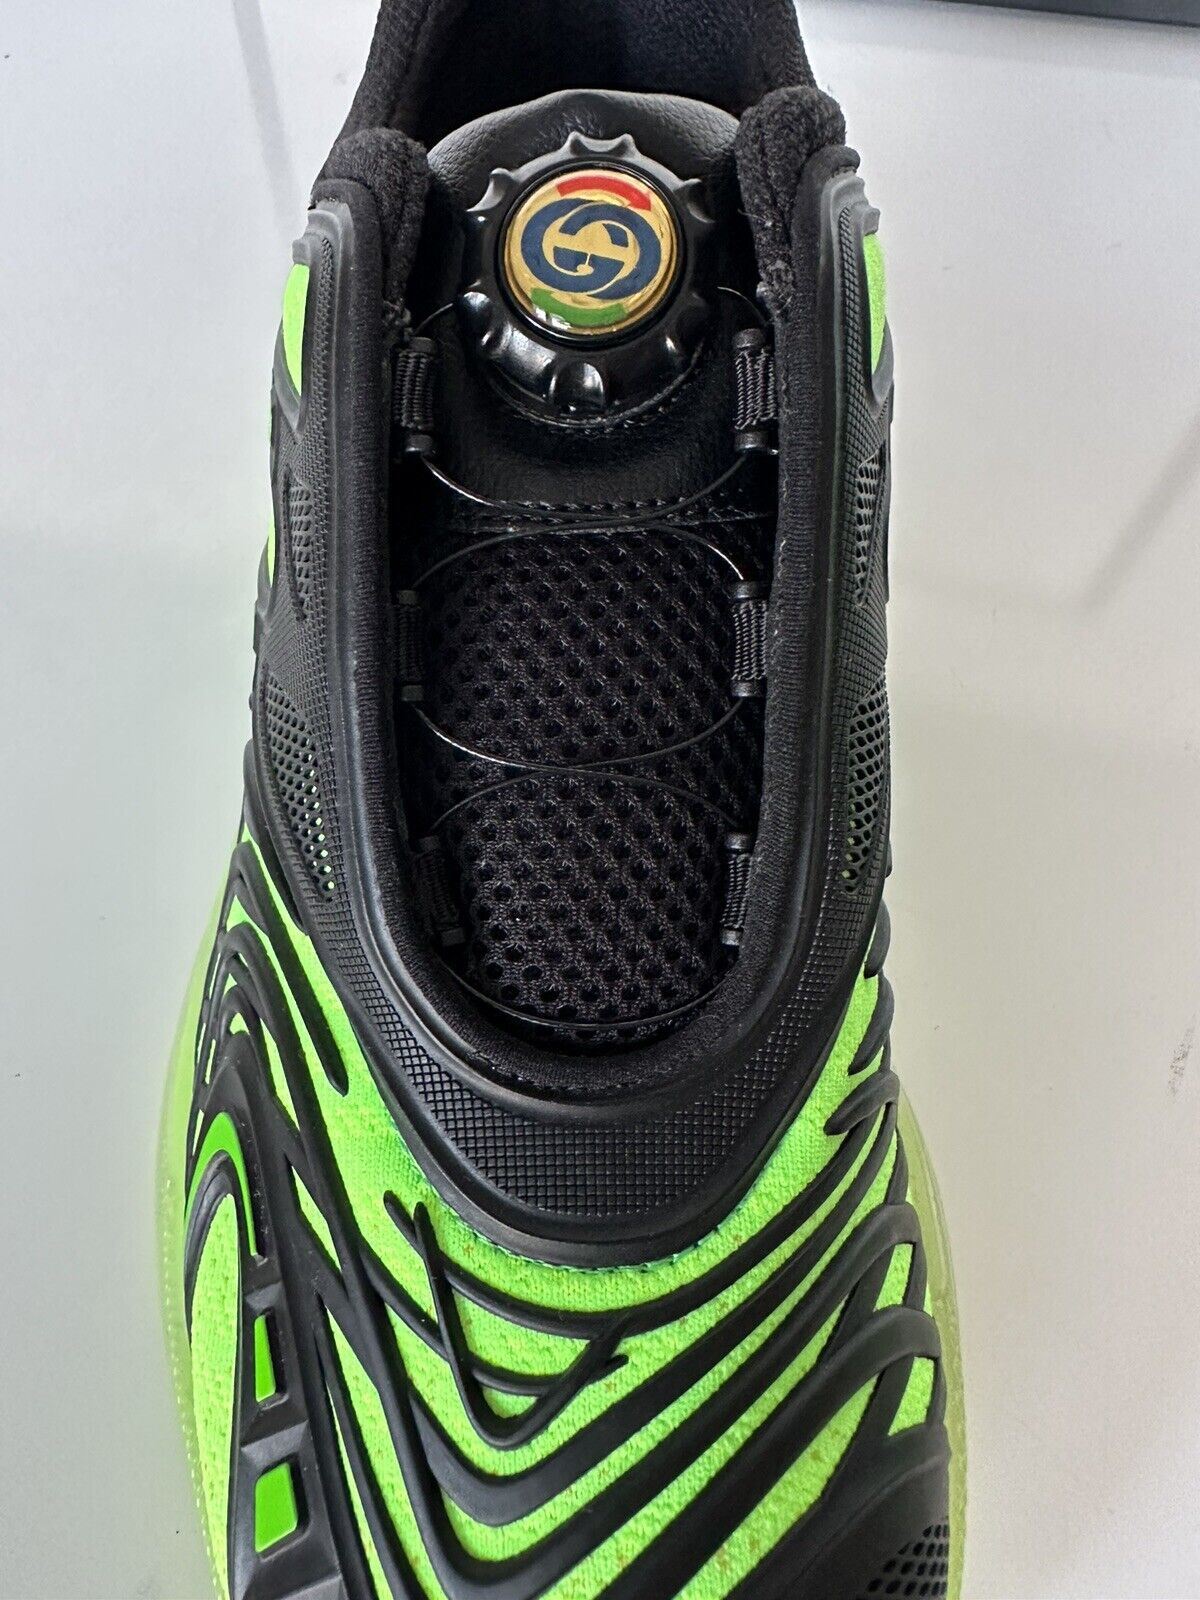 Черные и зеленые кроссовки NIB Gucci Ultrapace R 8 US (Gucci 7.5) 620337 IT